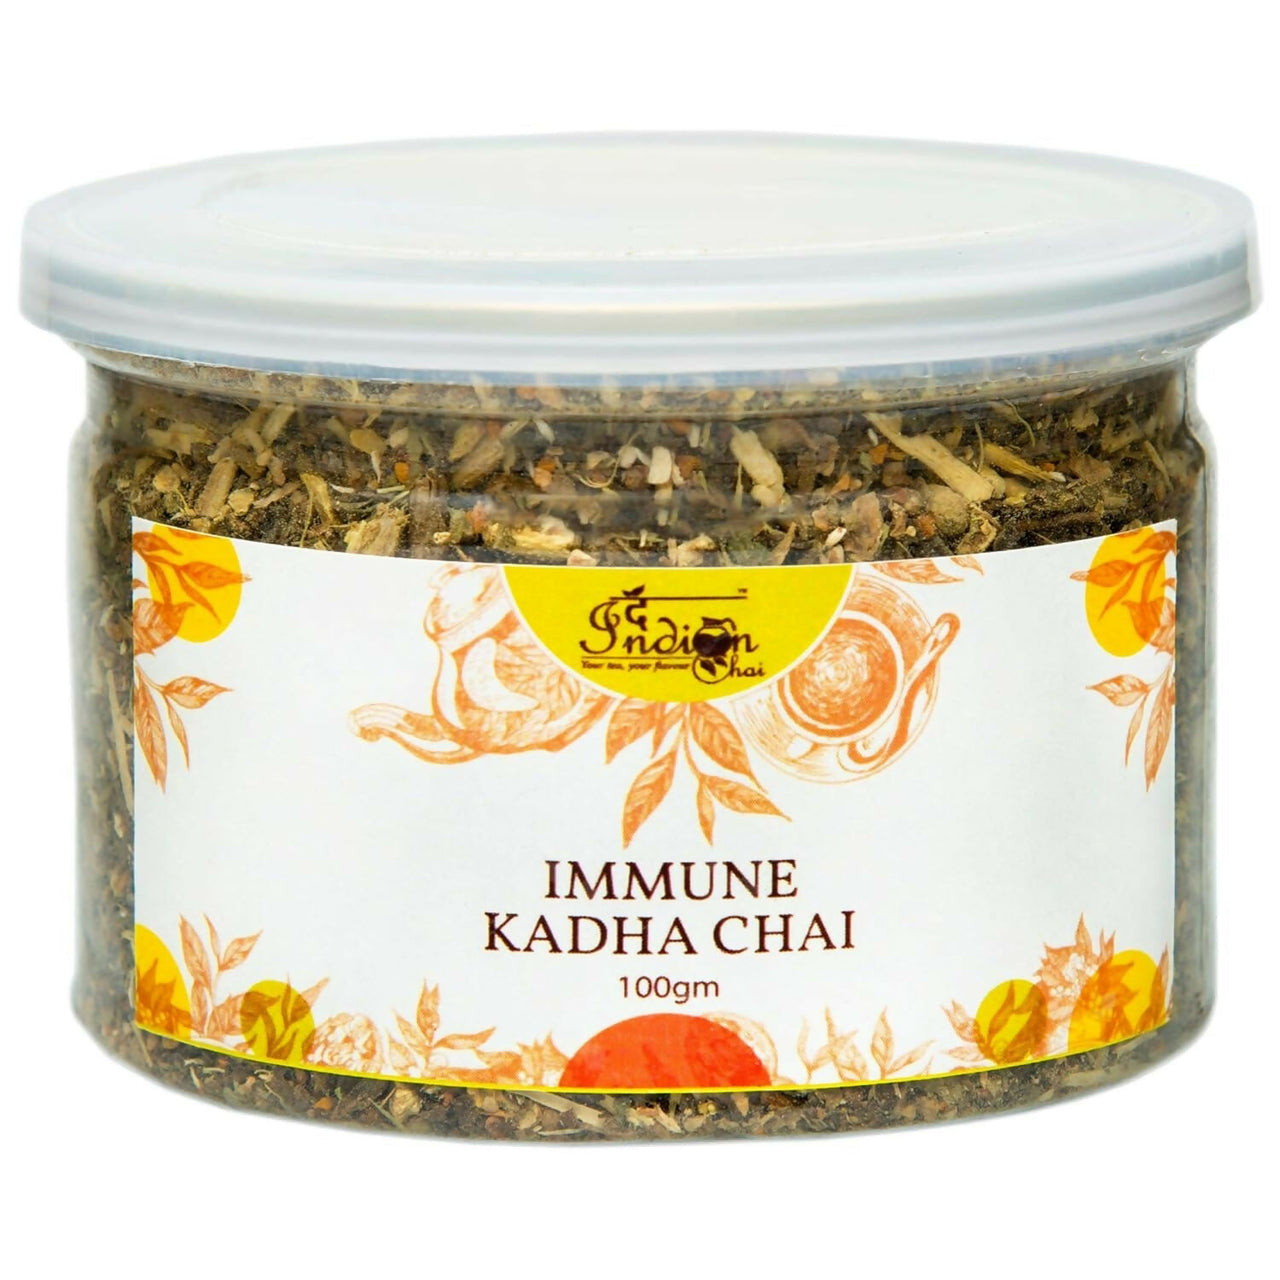 The Indian Chai - ImmunE Kadha Chai - Distacart